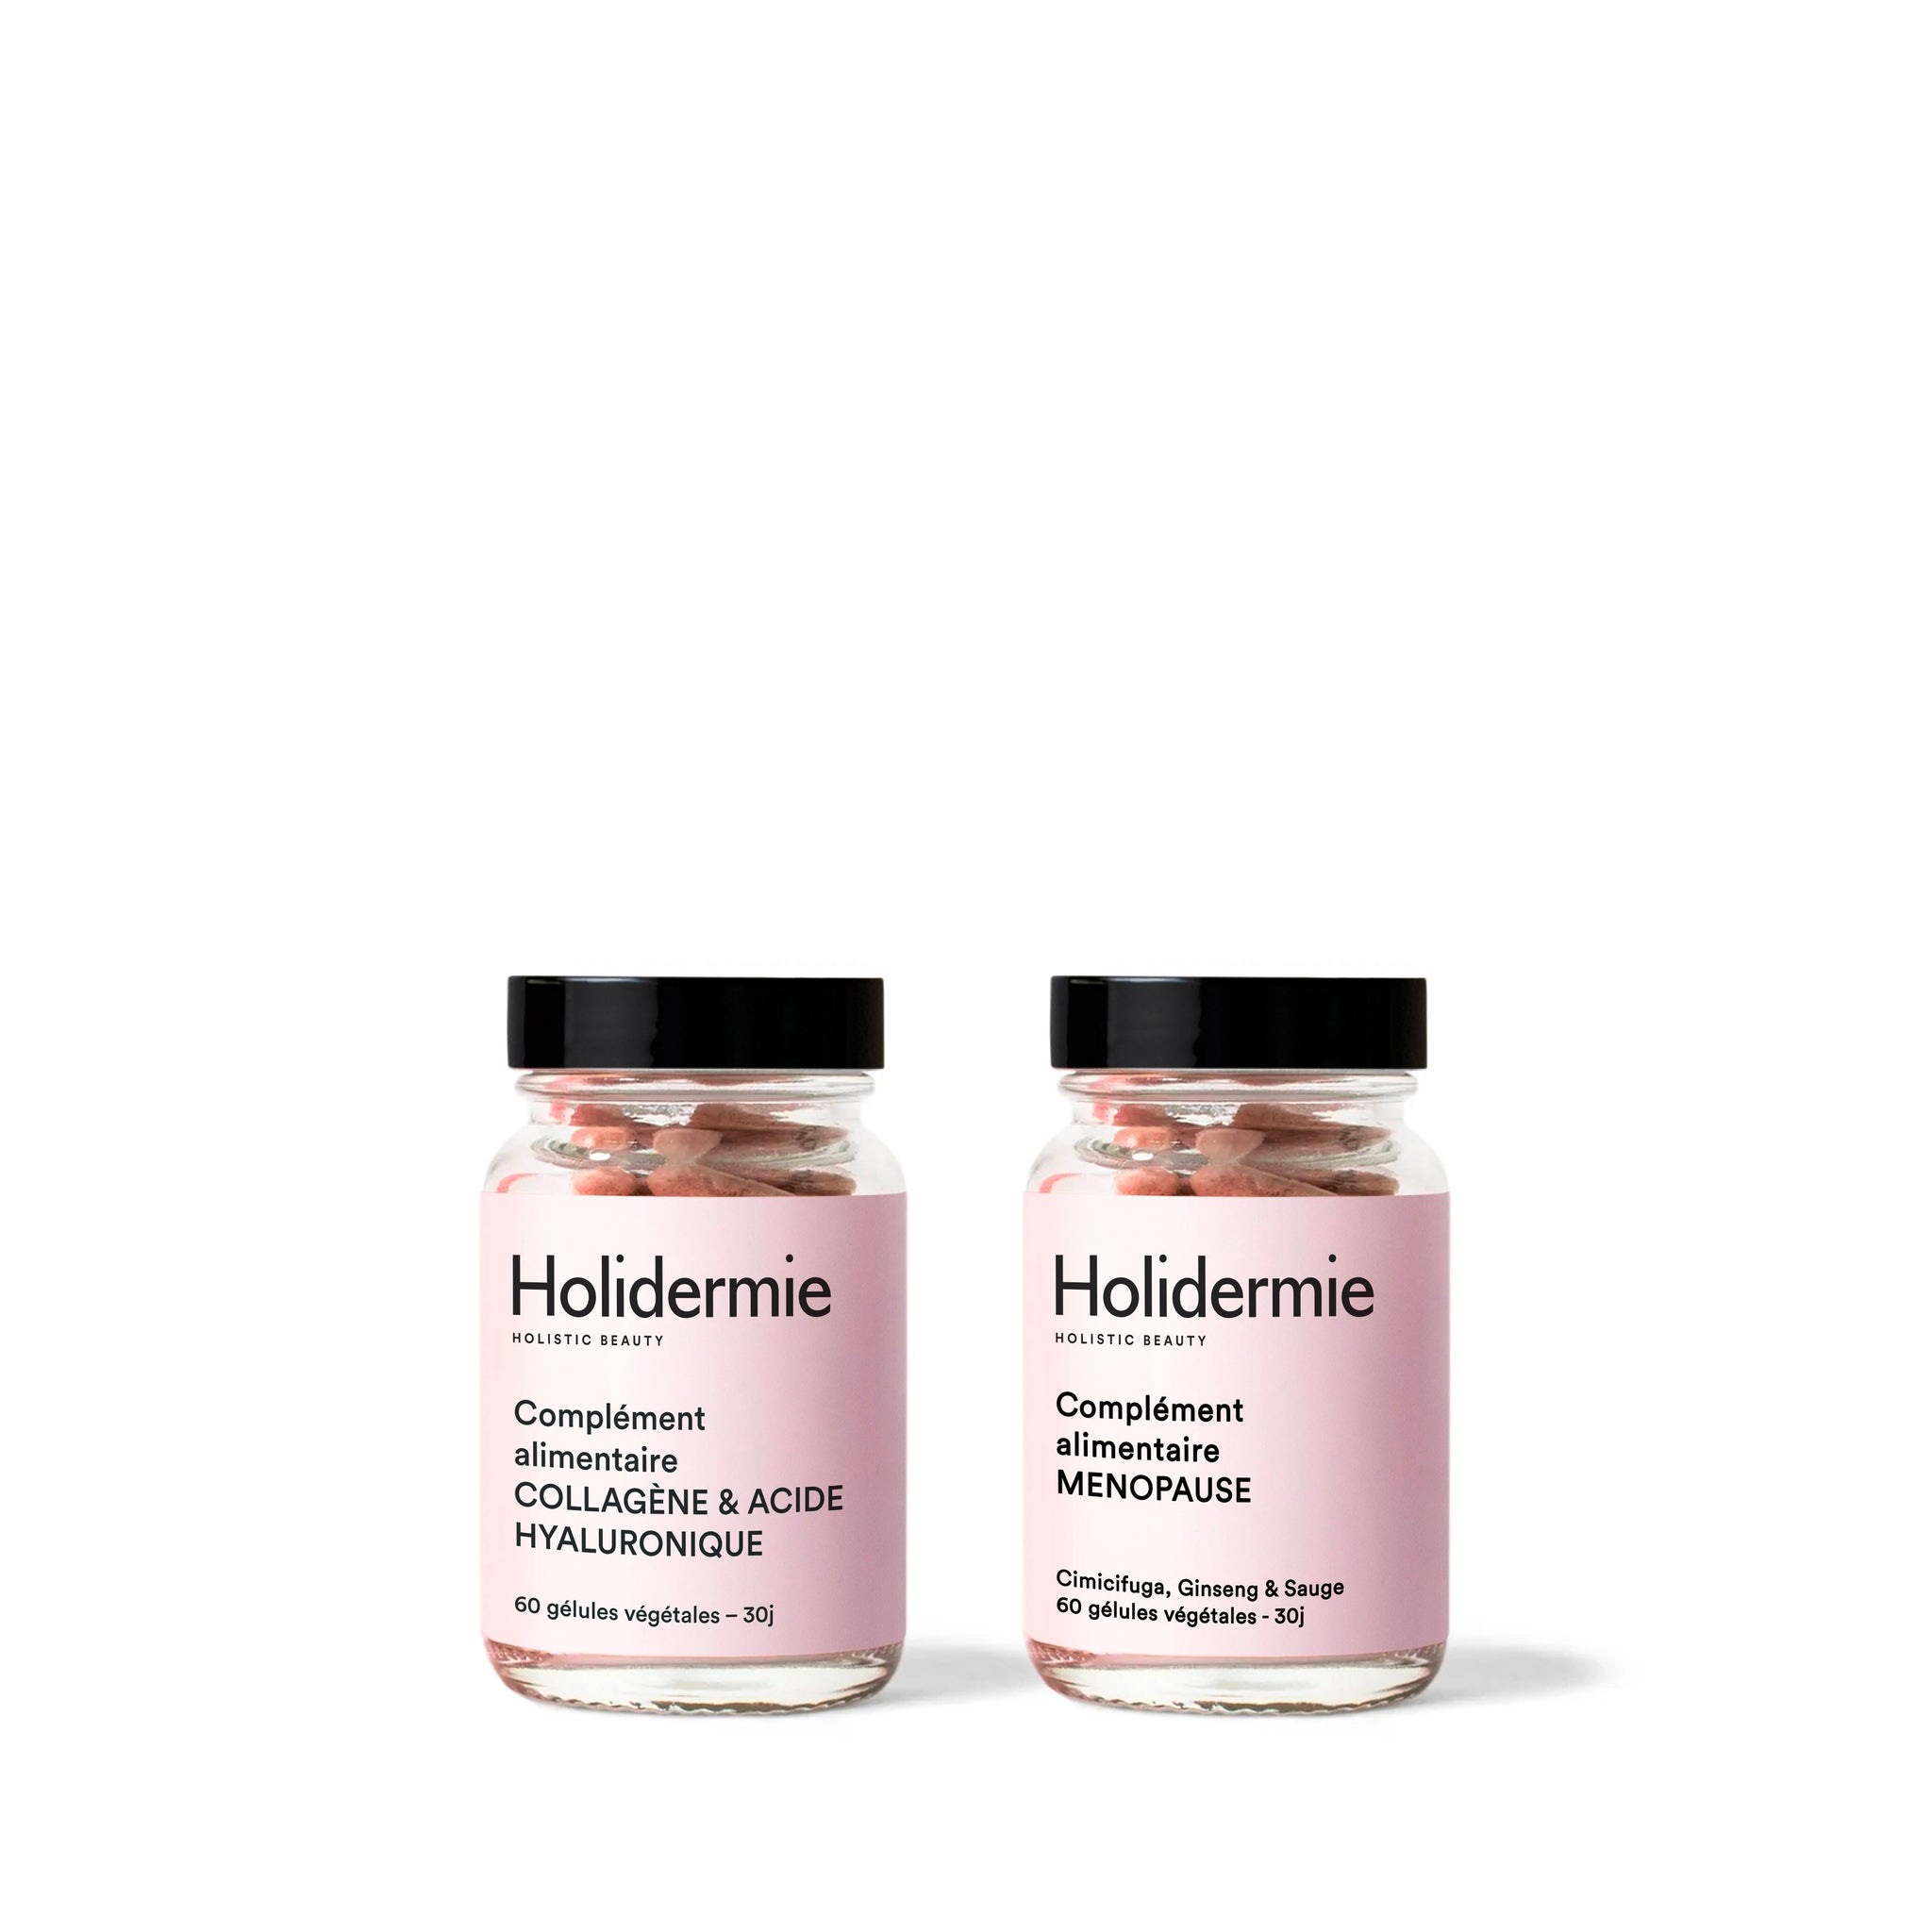 Duo Collagène / Acide Hyaluronique & Équilibre féminin / Ménopause